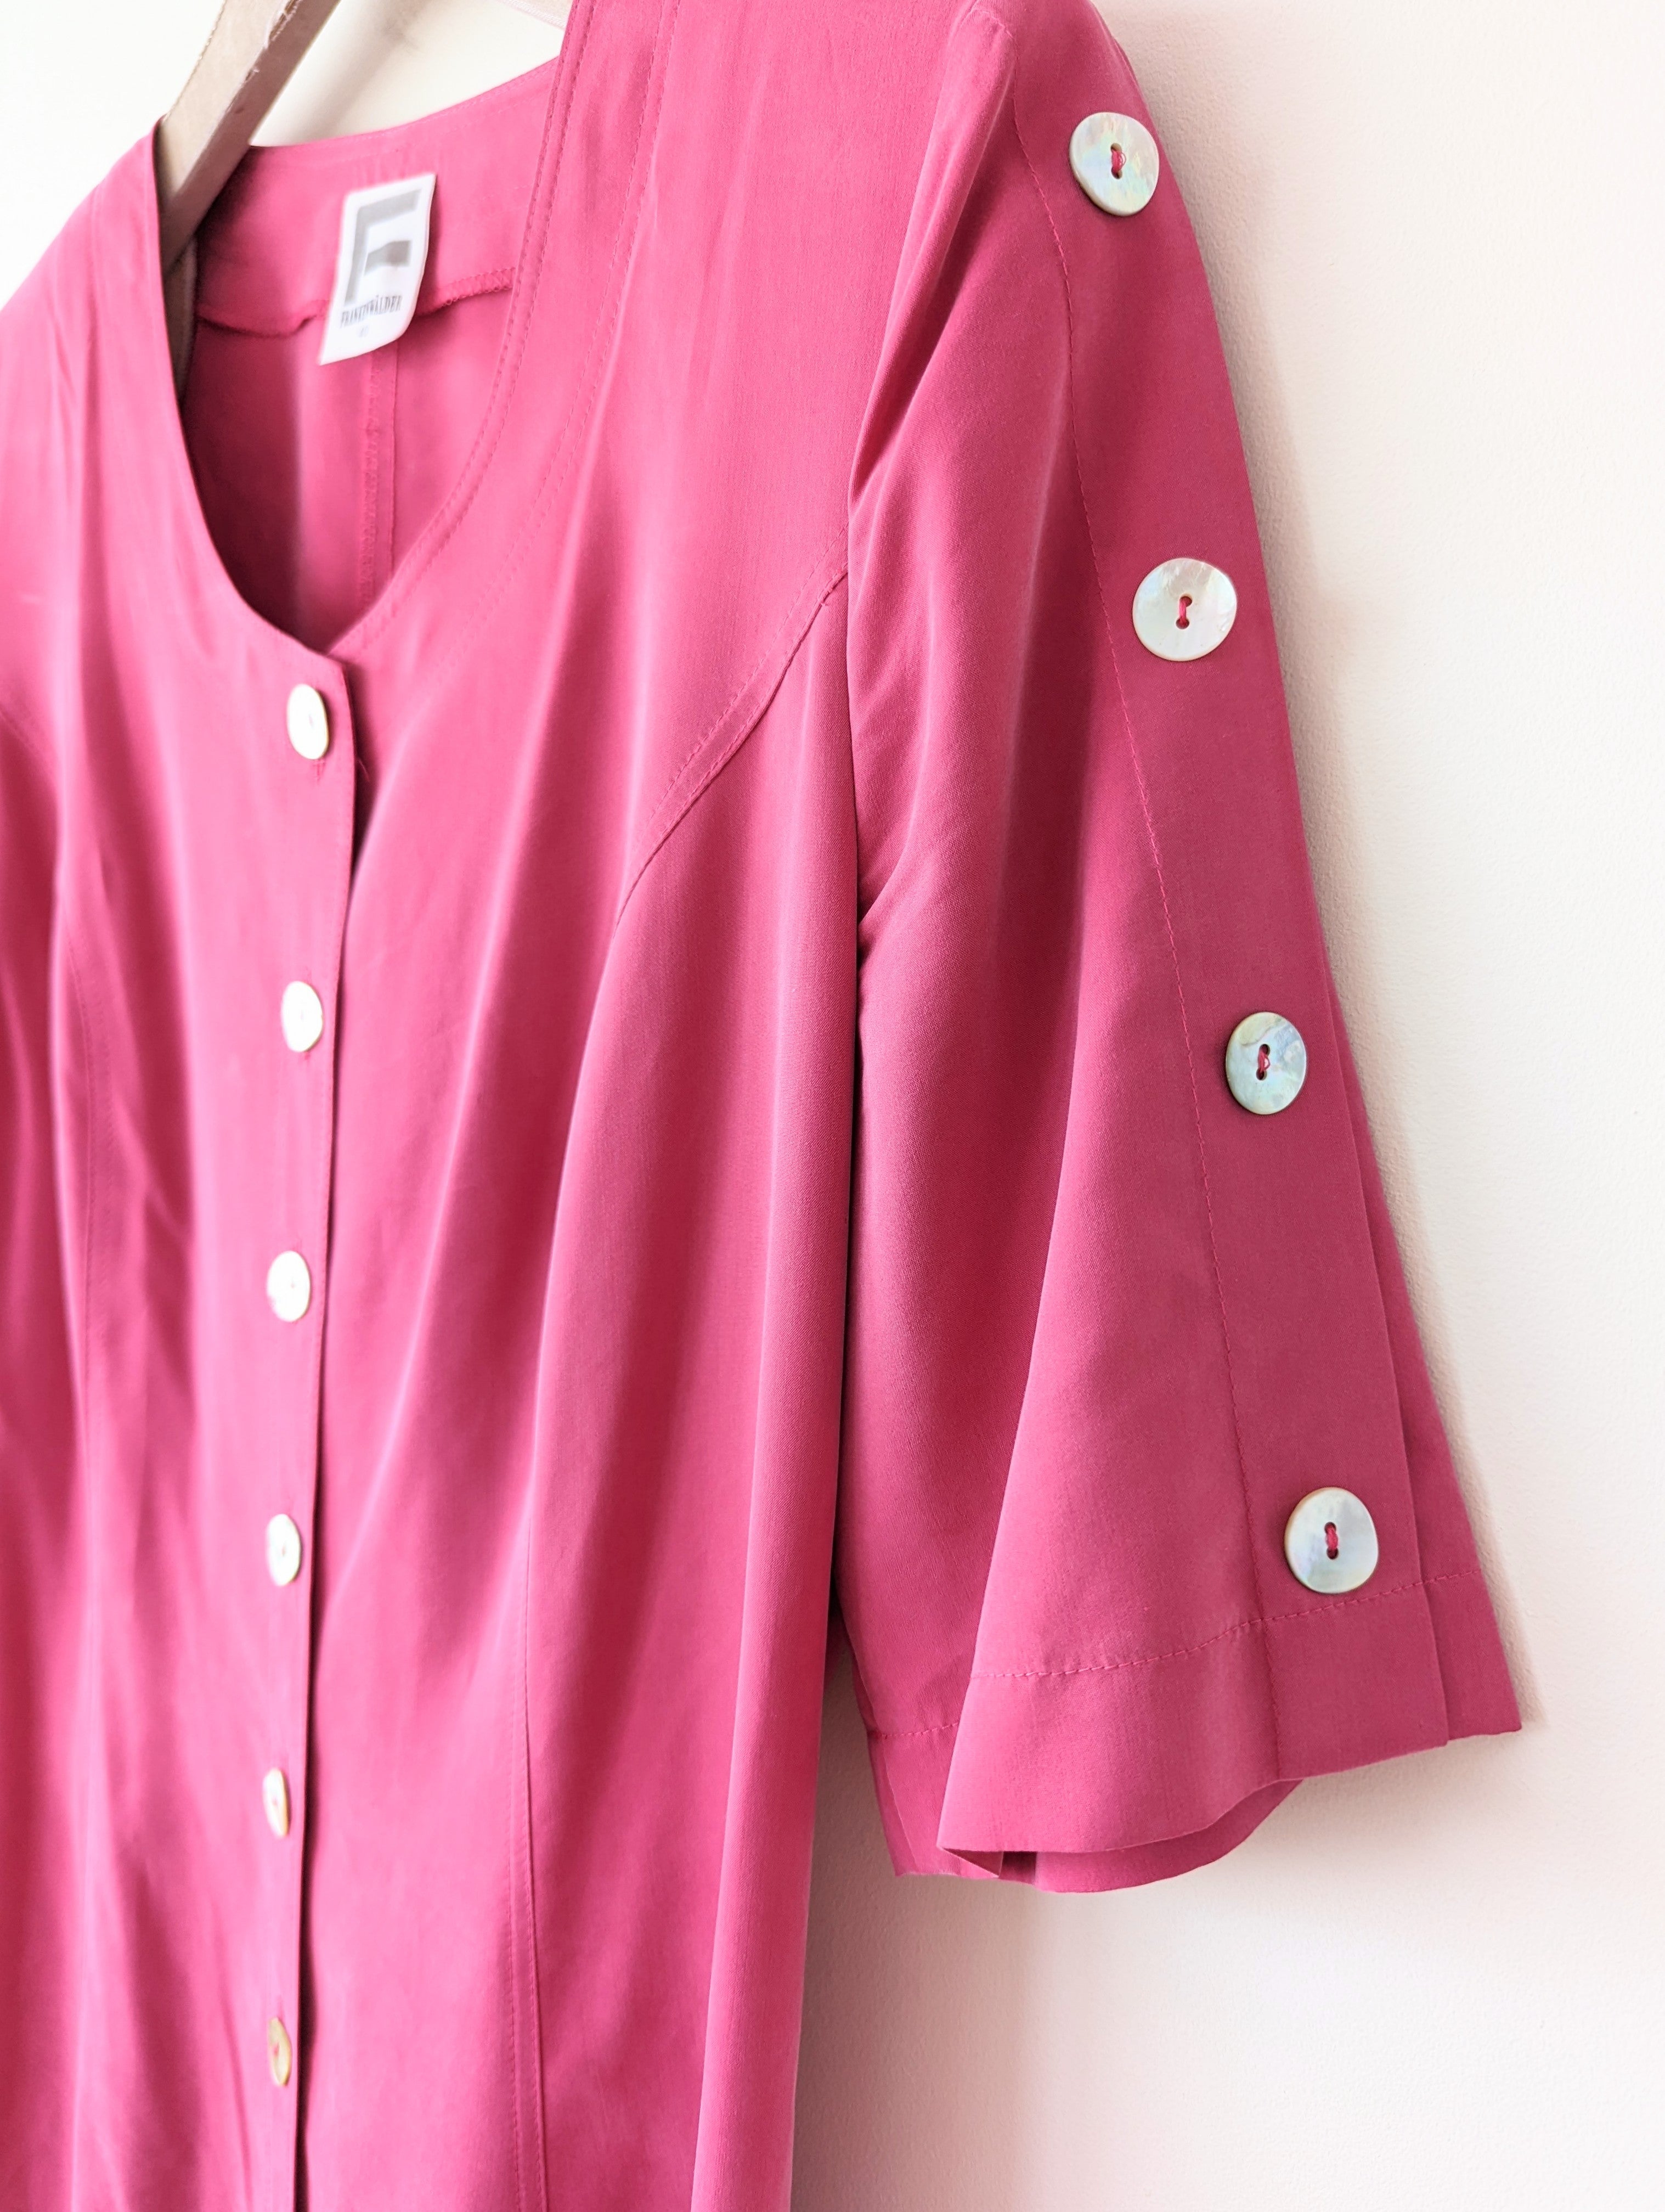 Kleid Midi Pink 80s Perlmutt Heavin (M-L)